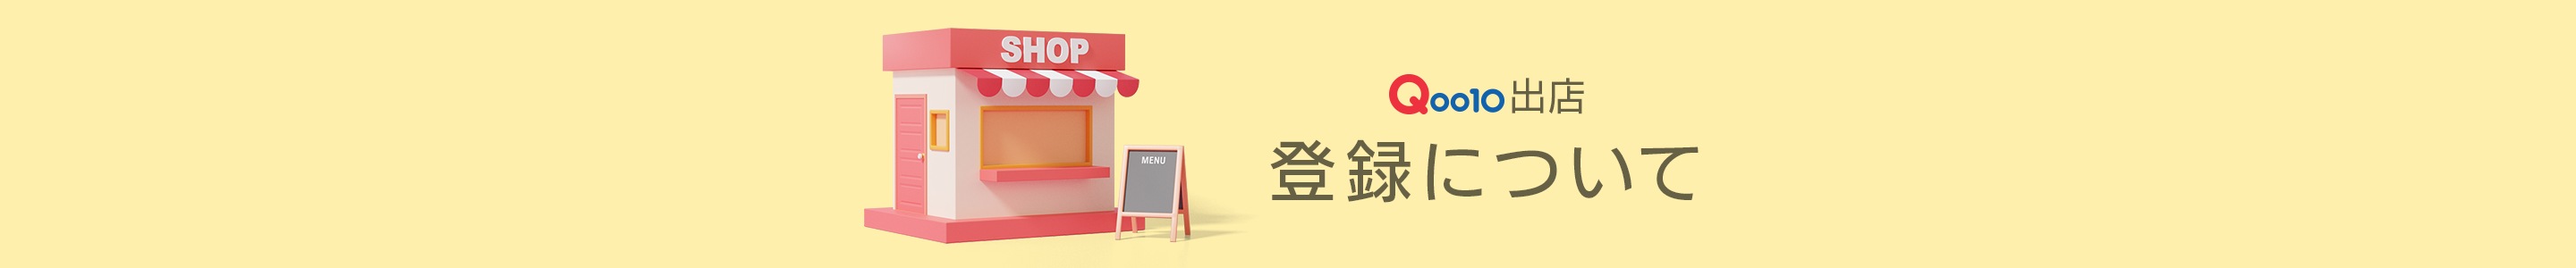 Qoo10出店 登録について